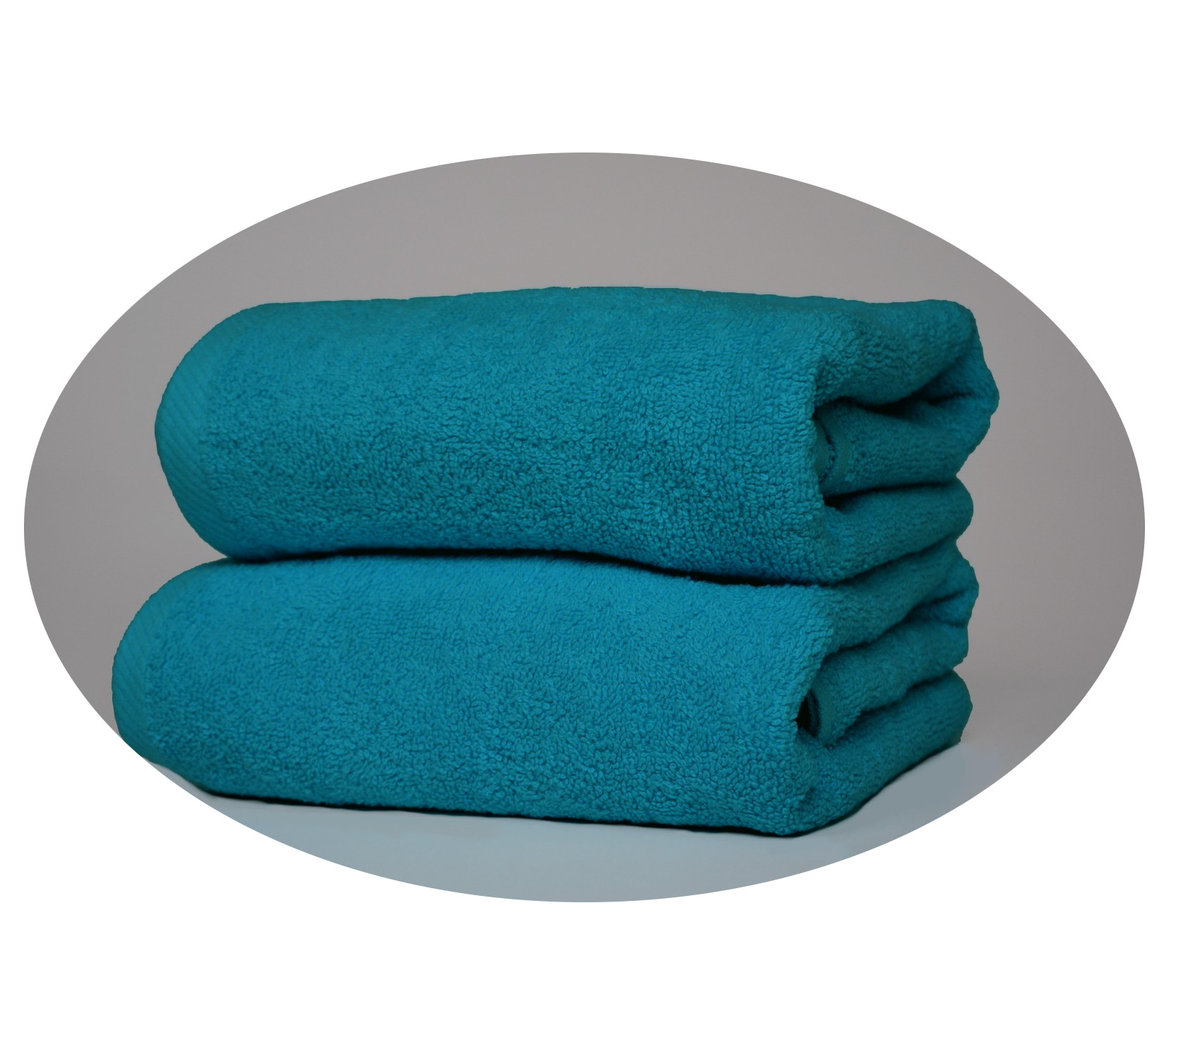 Zdjęcia - Ręcznik Aqua   Hotelowy Kąpielowy 140X70 - Extra Soft 